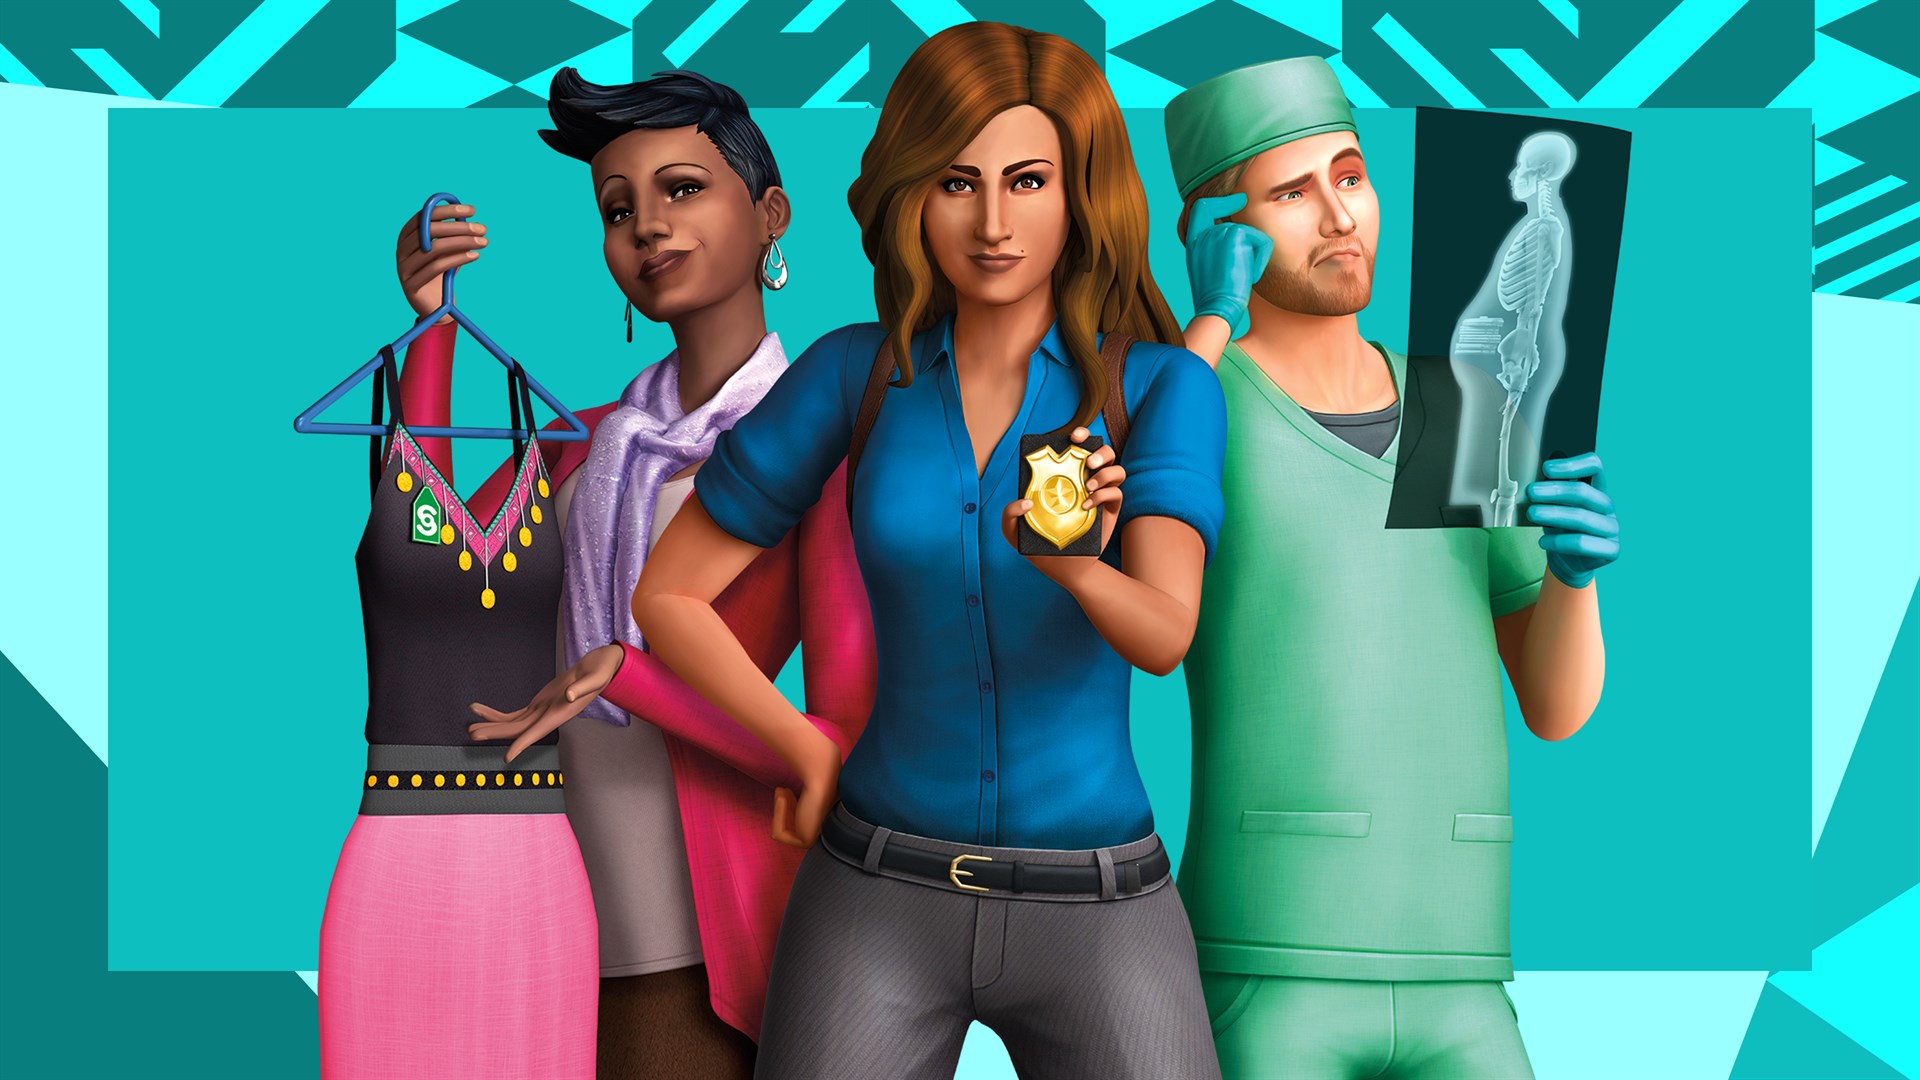 The Sims 4 Ao Trabalho